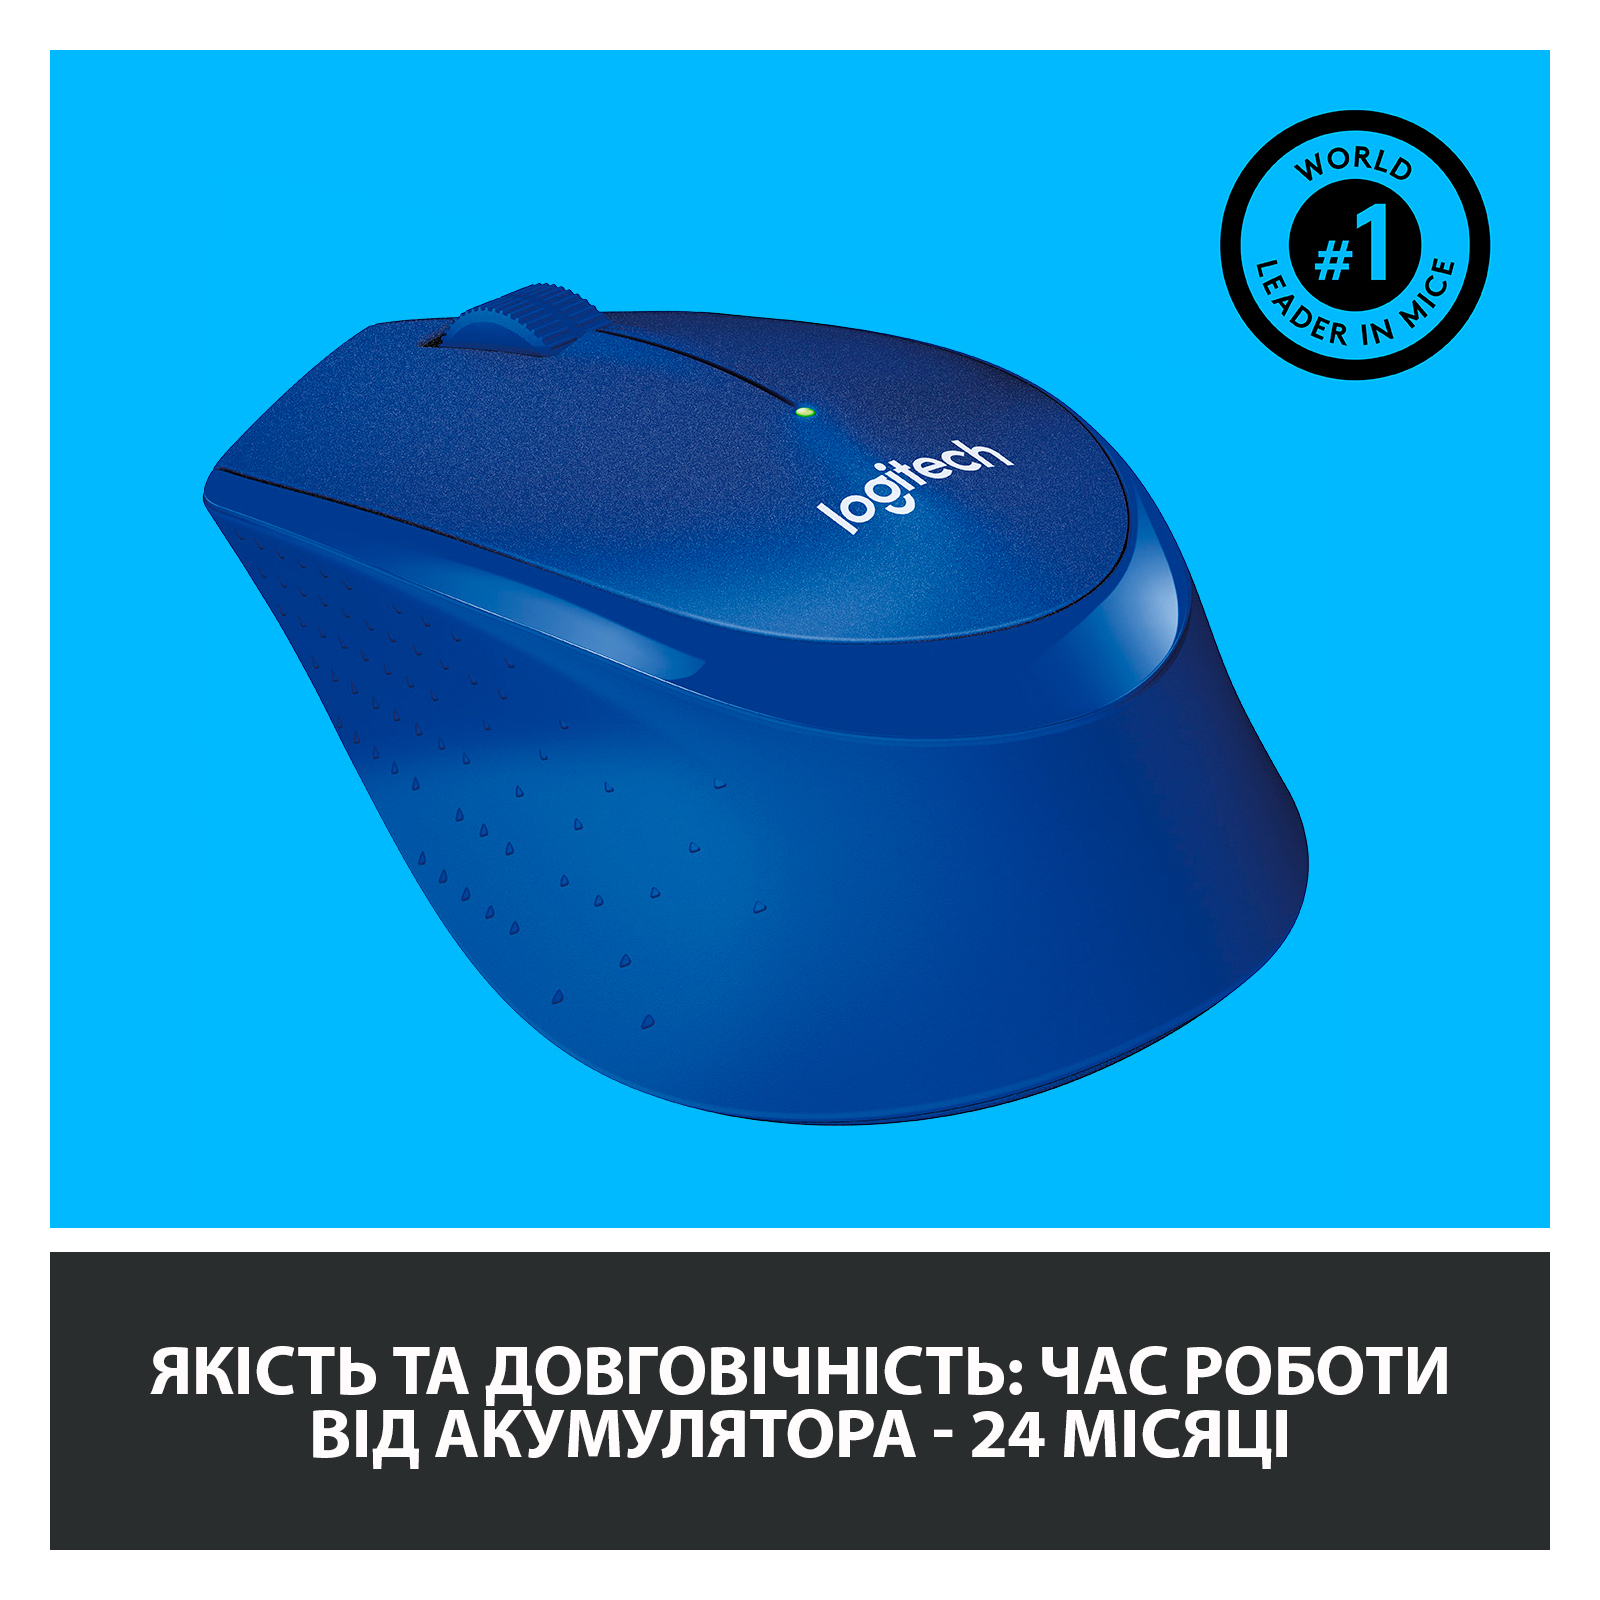 Мышка Logitech M330 Silent plus Blue (910-004910) изображение 5